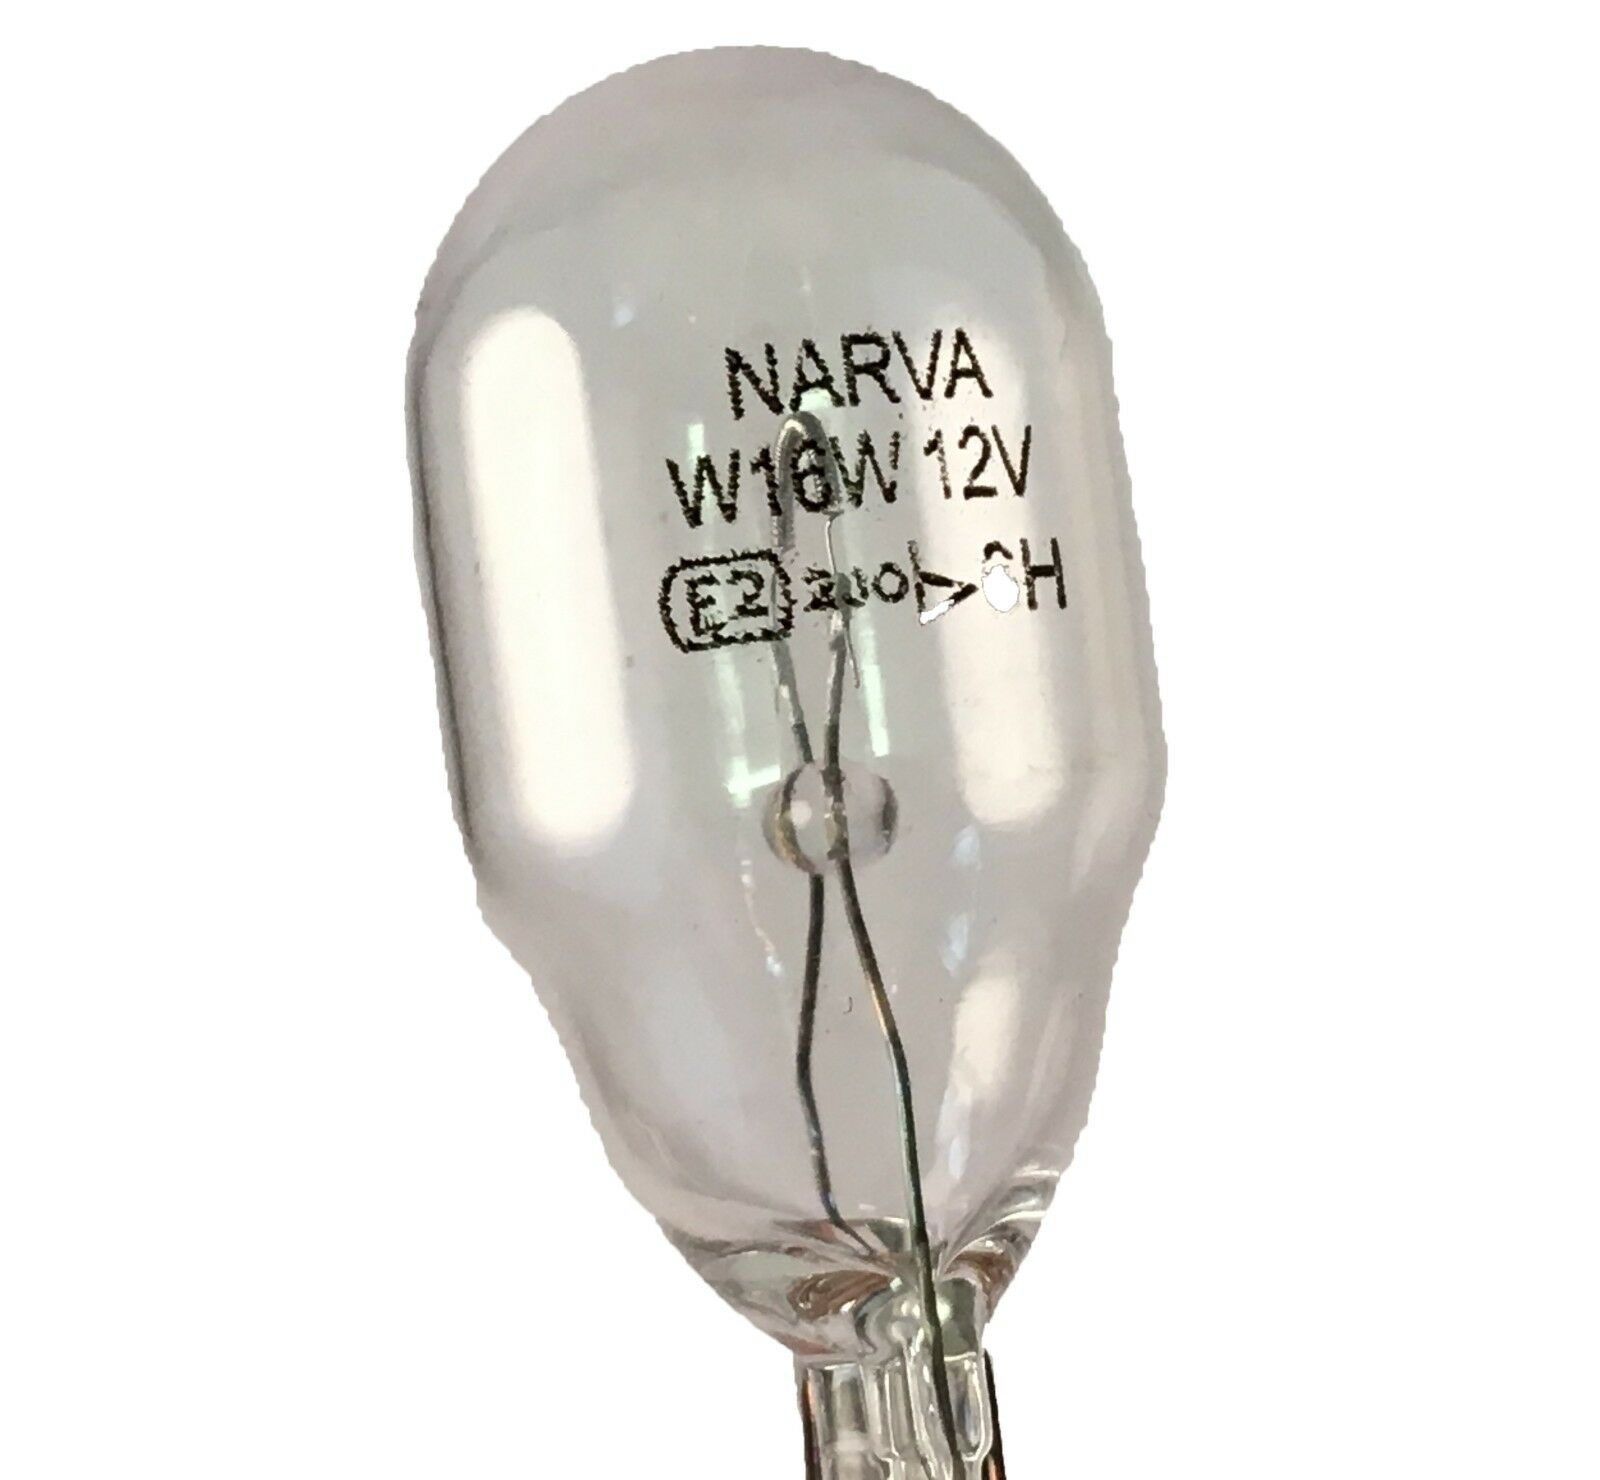 W16W 12V BULB NARVA - AutoFast Nigeria